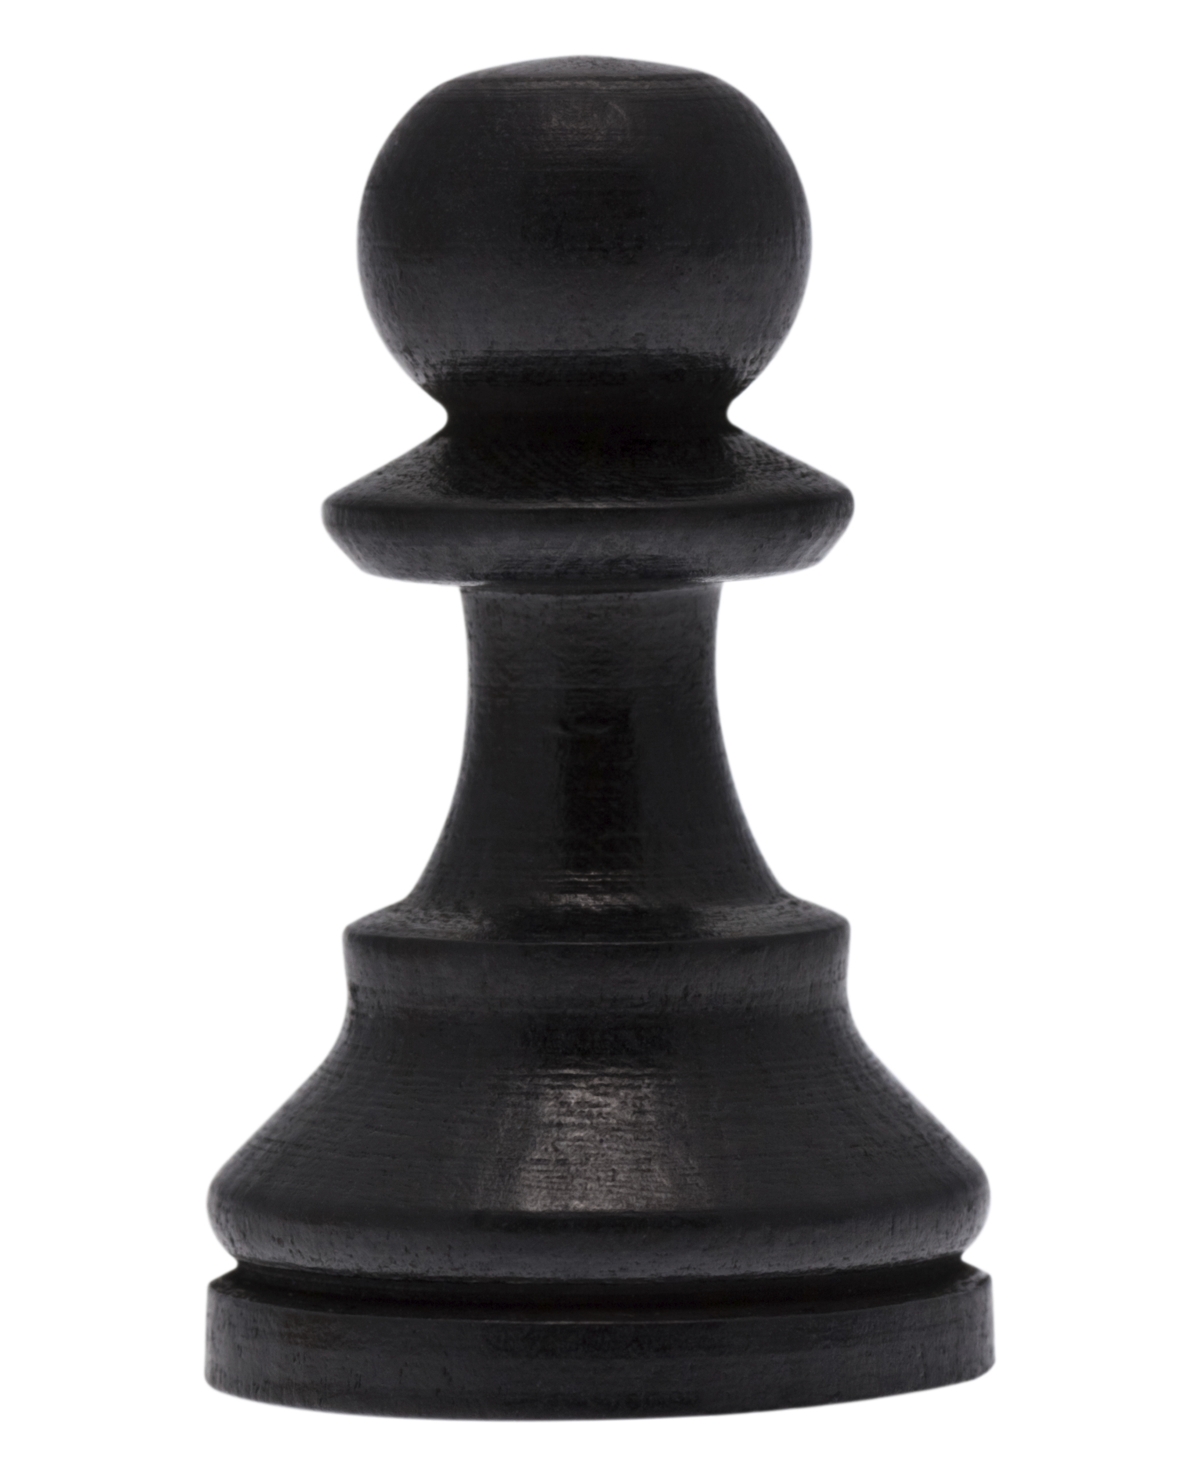 original names of chess pieces